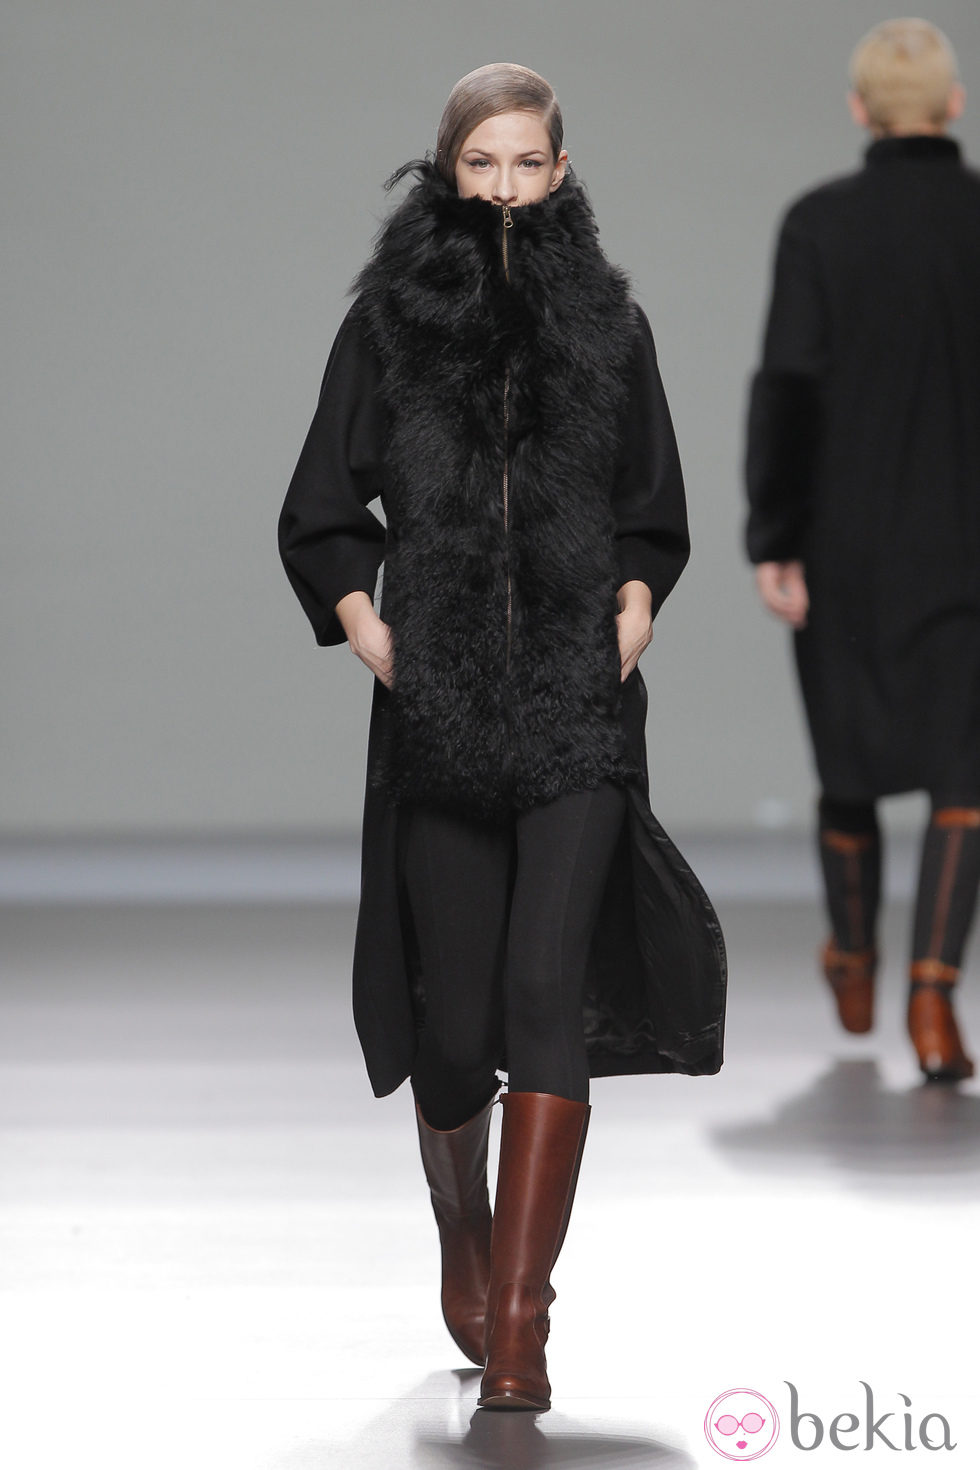 Abrigo de pieles femenino de la colección otoño/invierno 2013/2014 de Etxeberria en Madrid Fashion Week